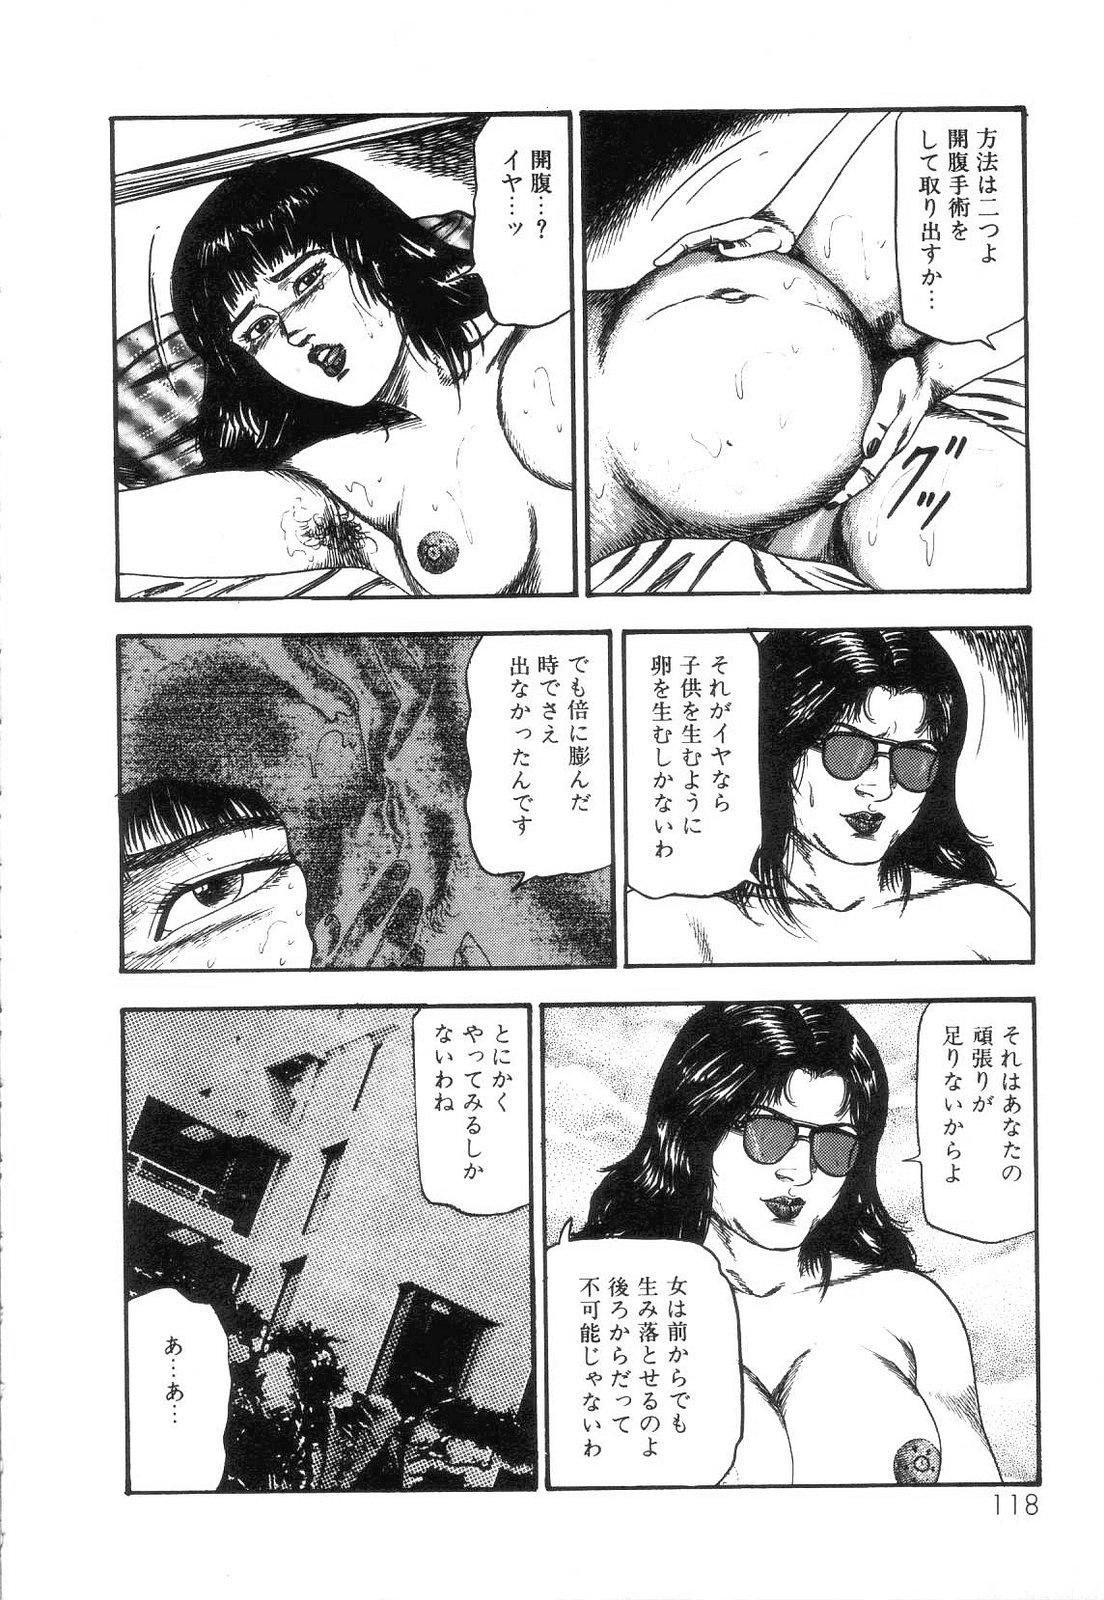 Shiro no Mokushiroku Vol. 4 - Bichiku Karen no Shou 119